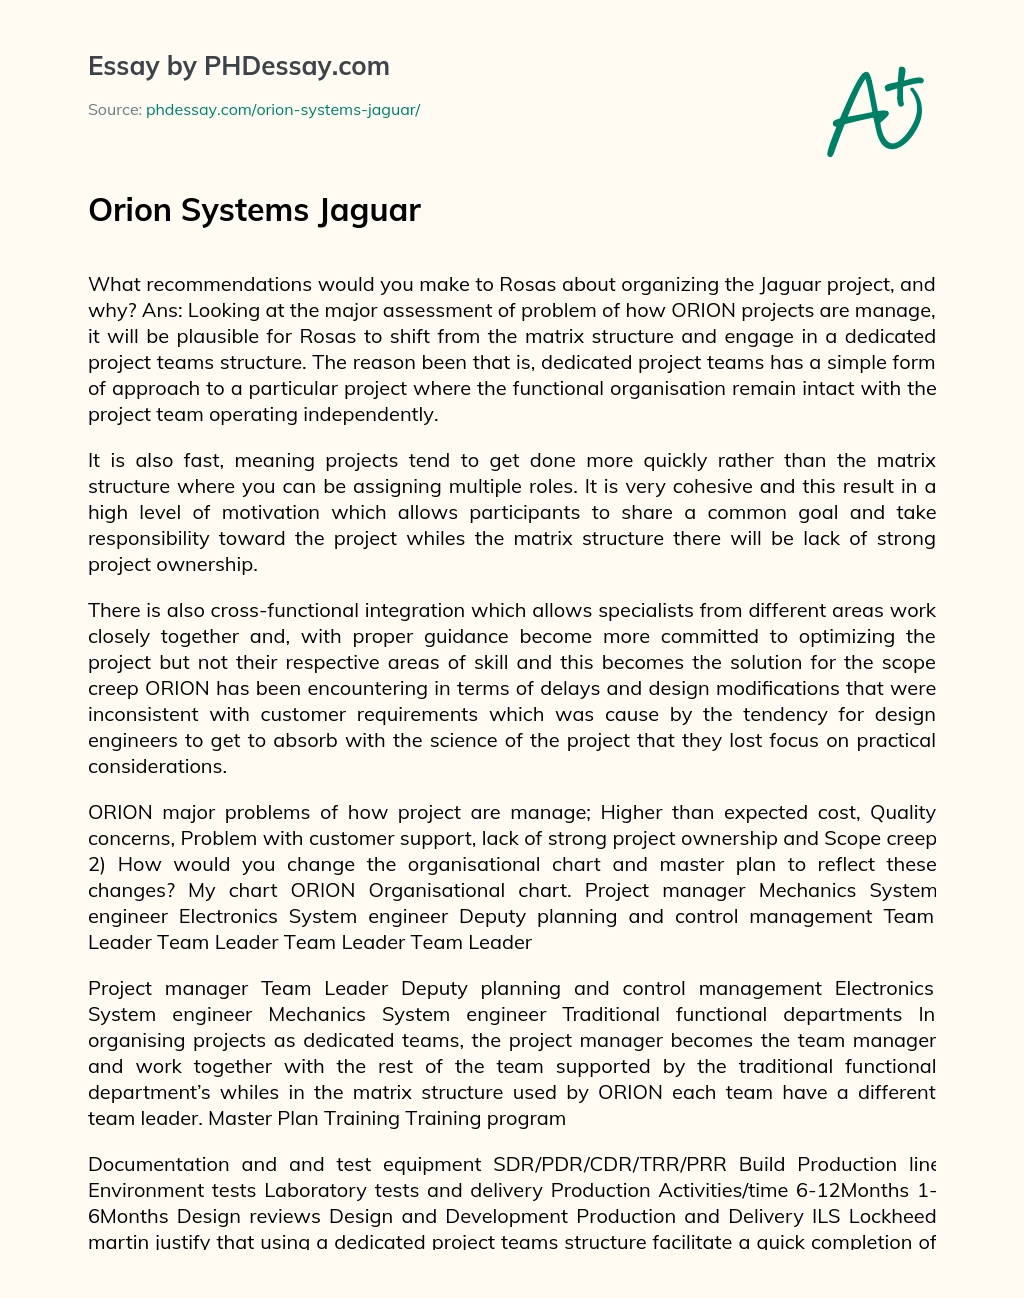 Orion Systems Jaguar essay